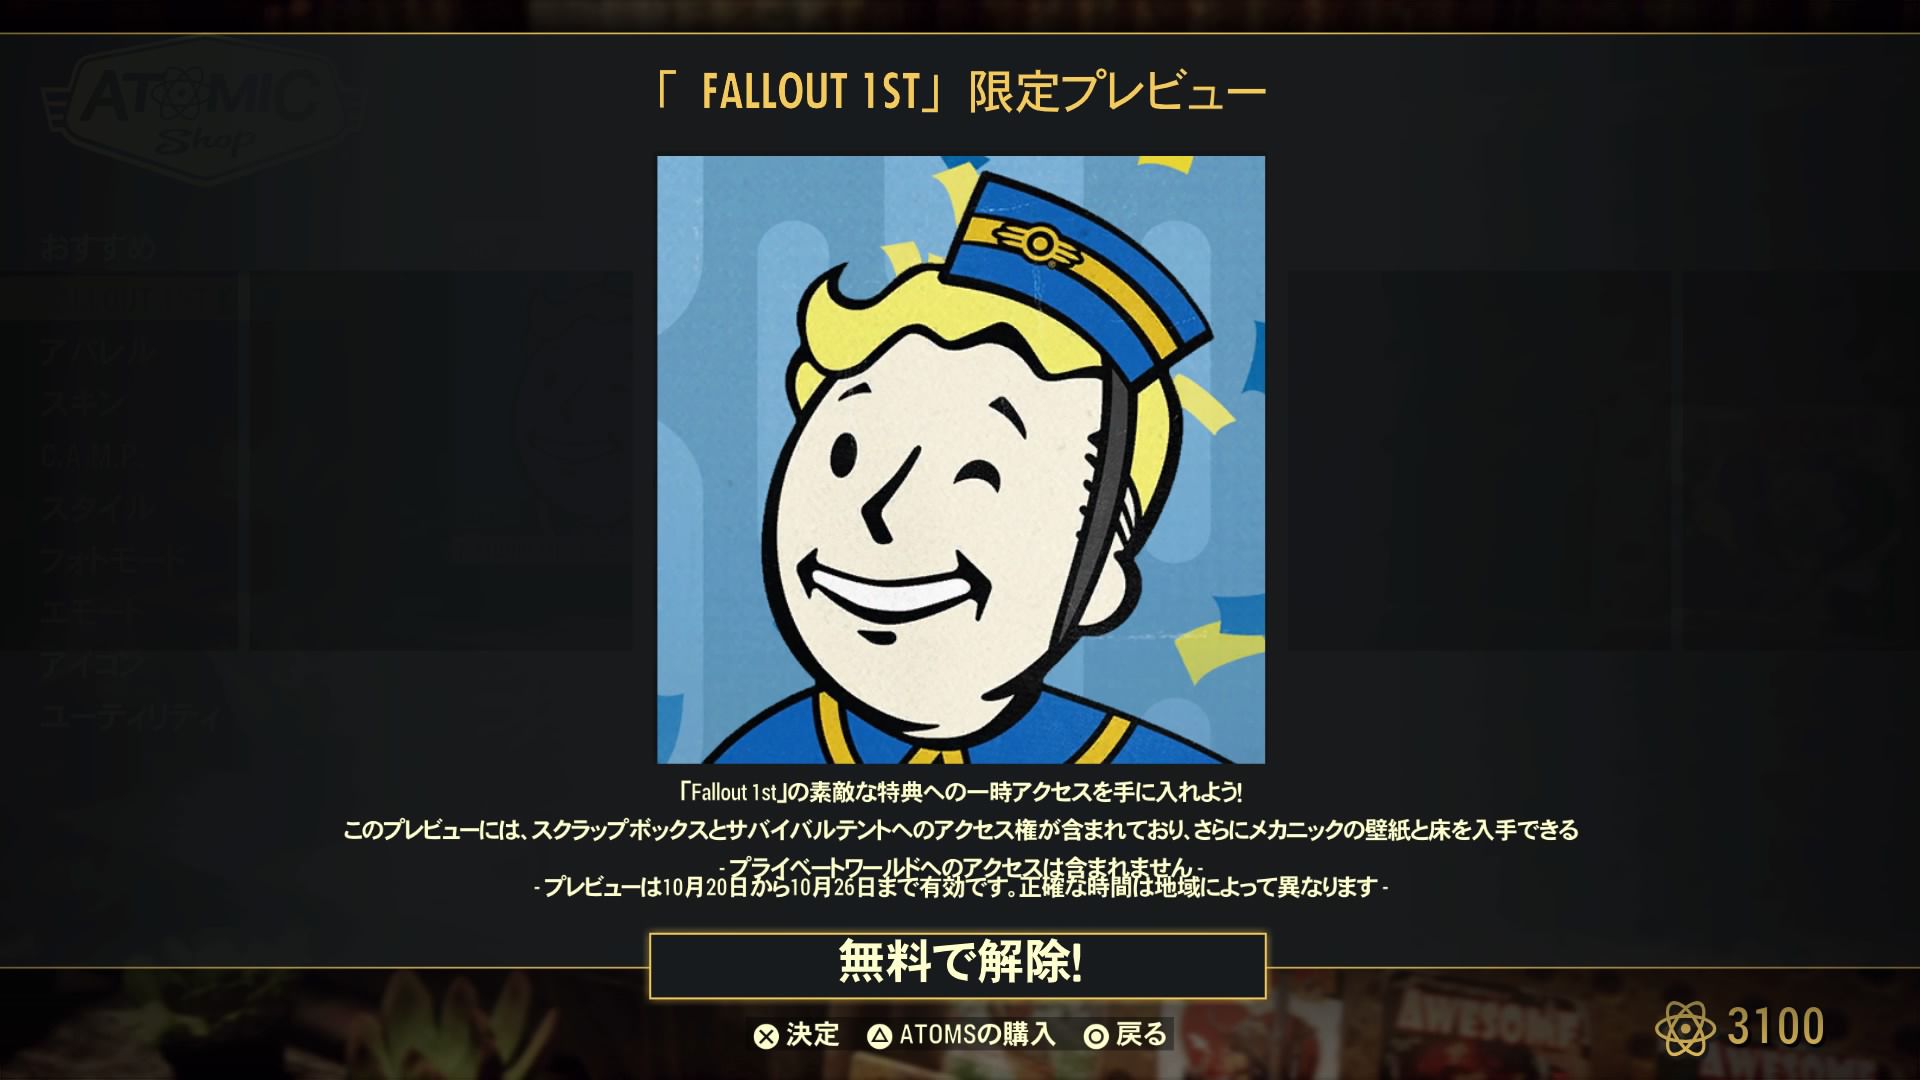 「Fallout 1st」の無料トライアル